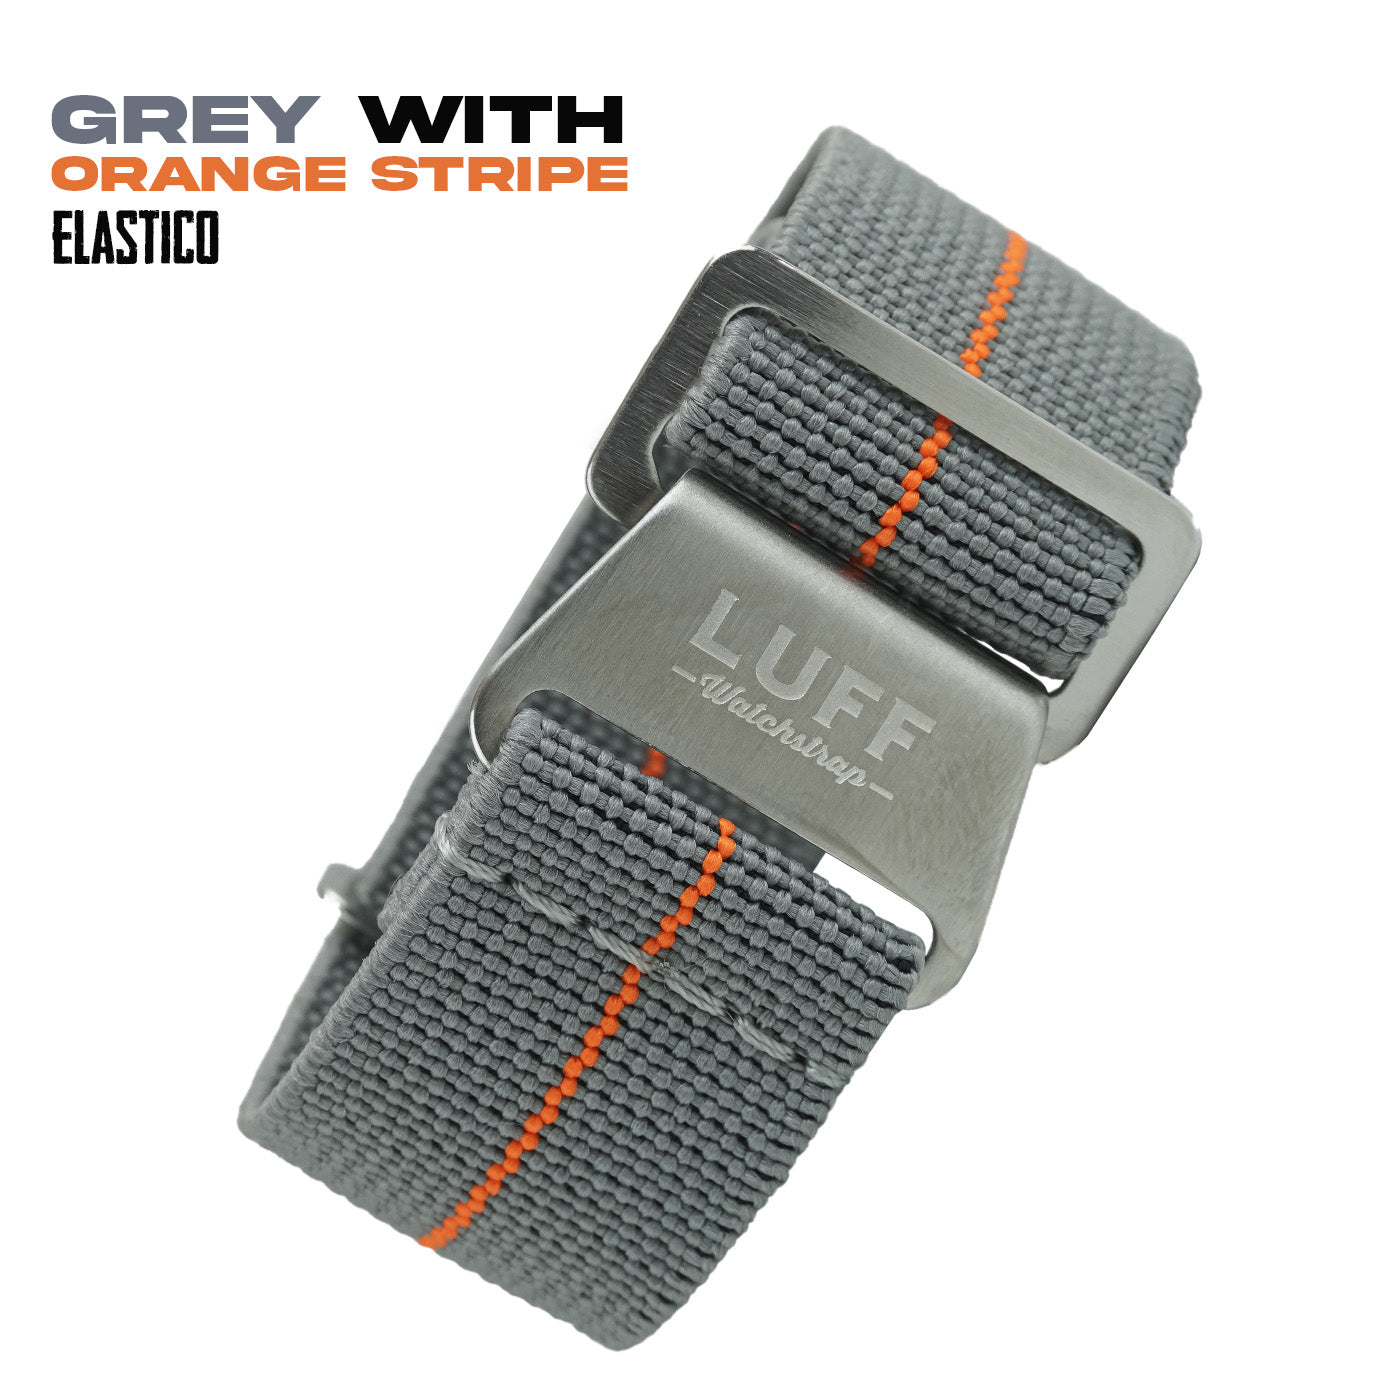 Grey with Orange Stripe (6903641505879)